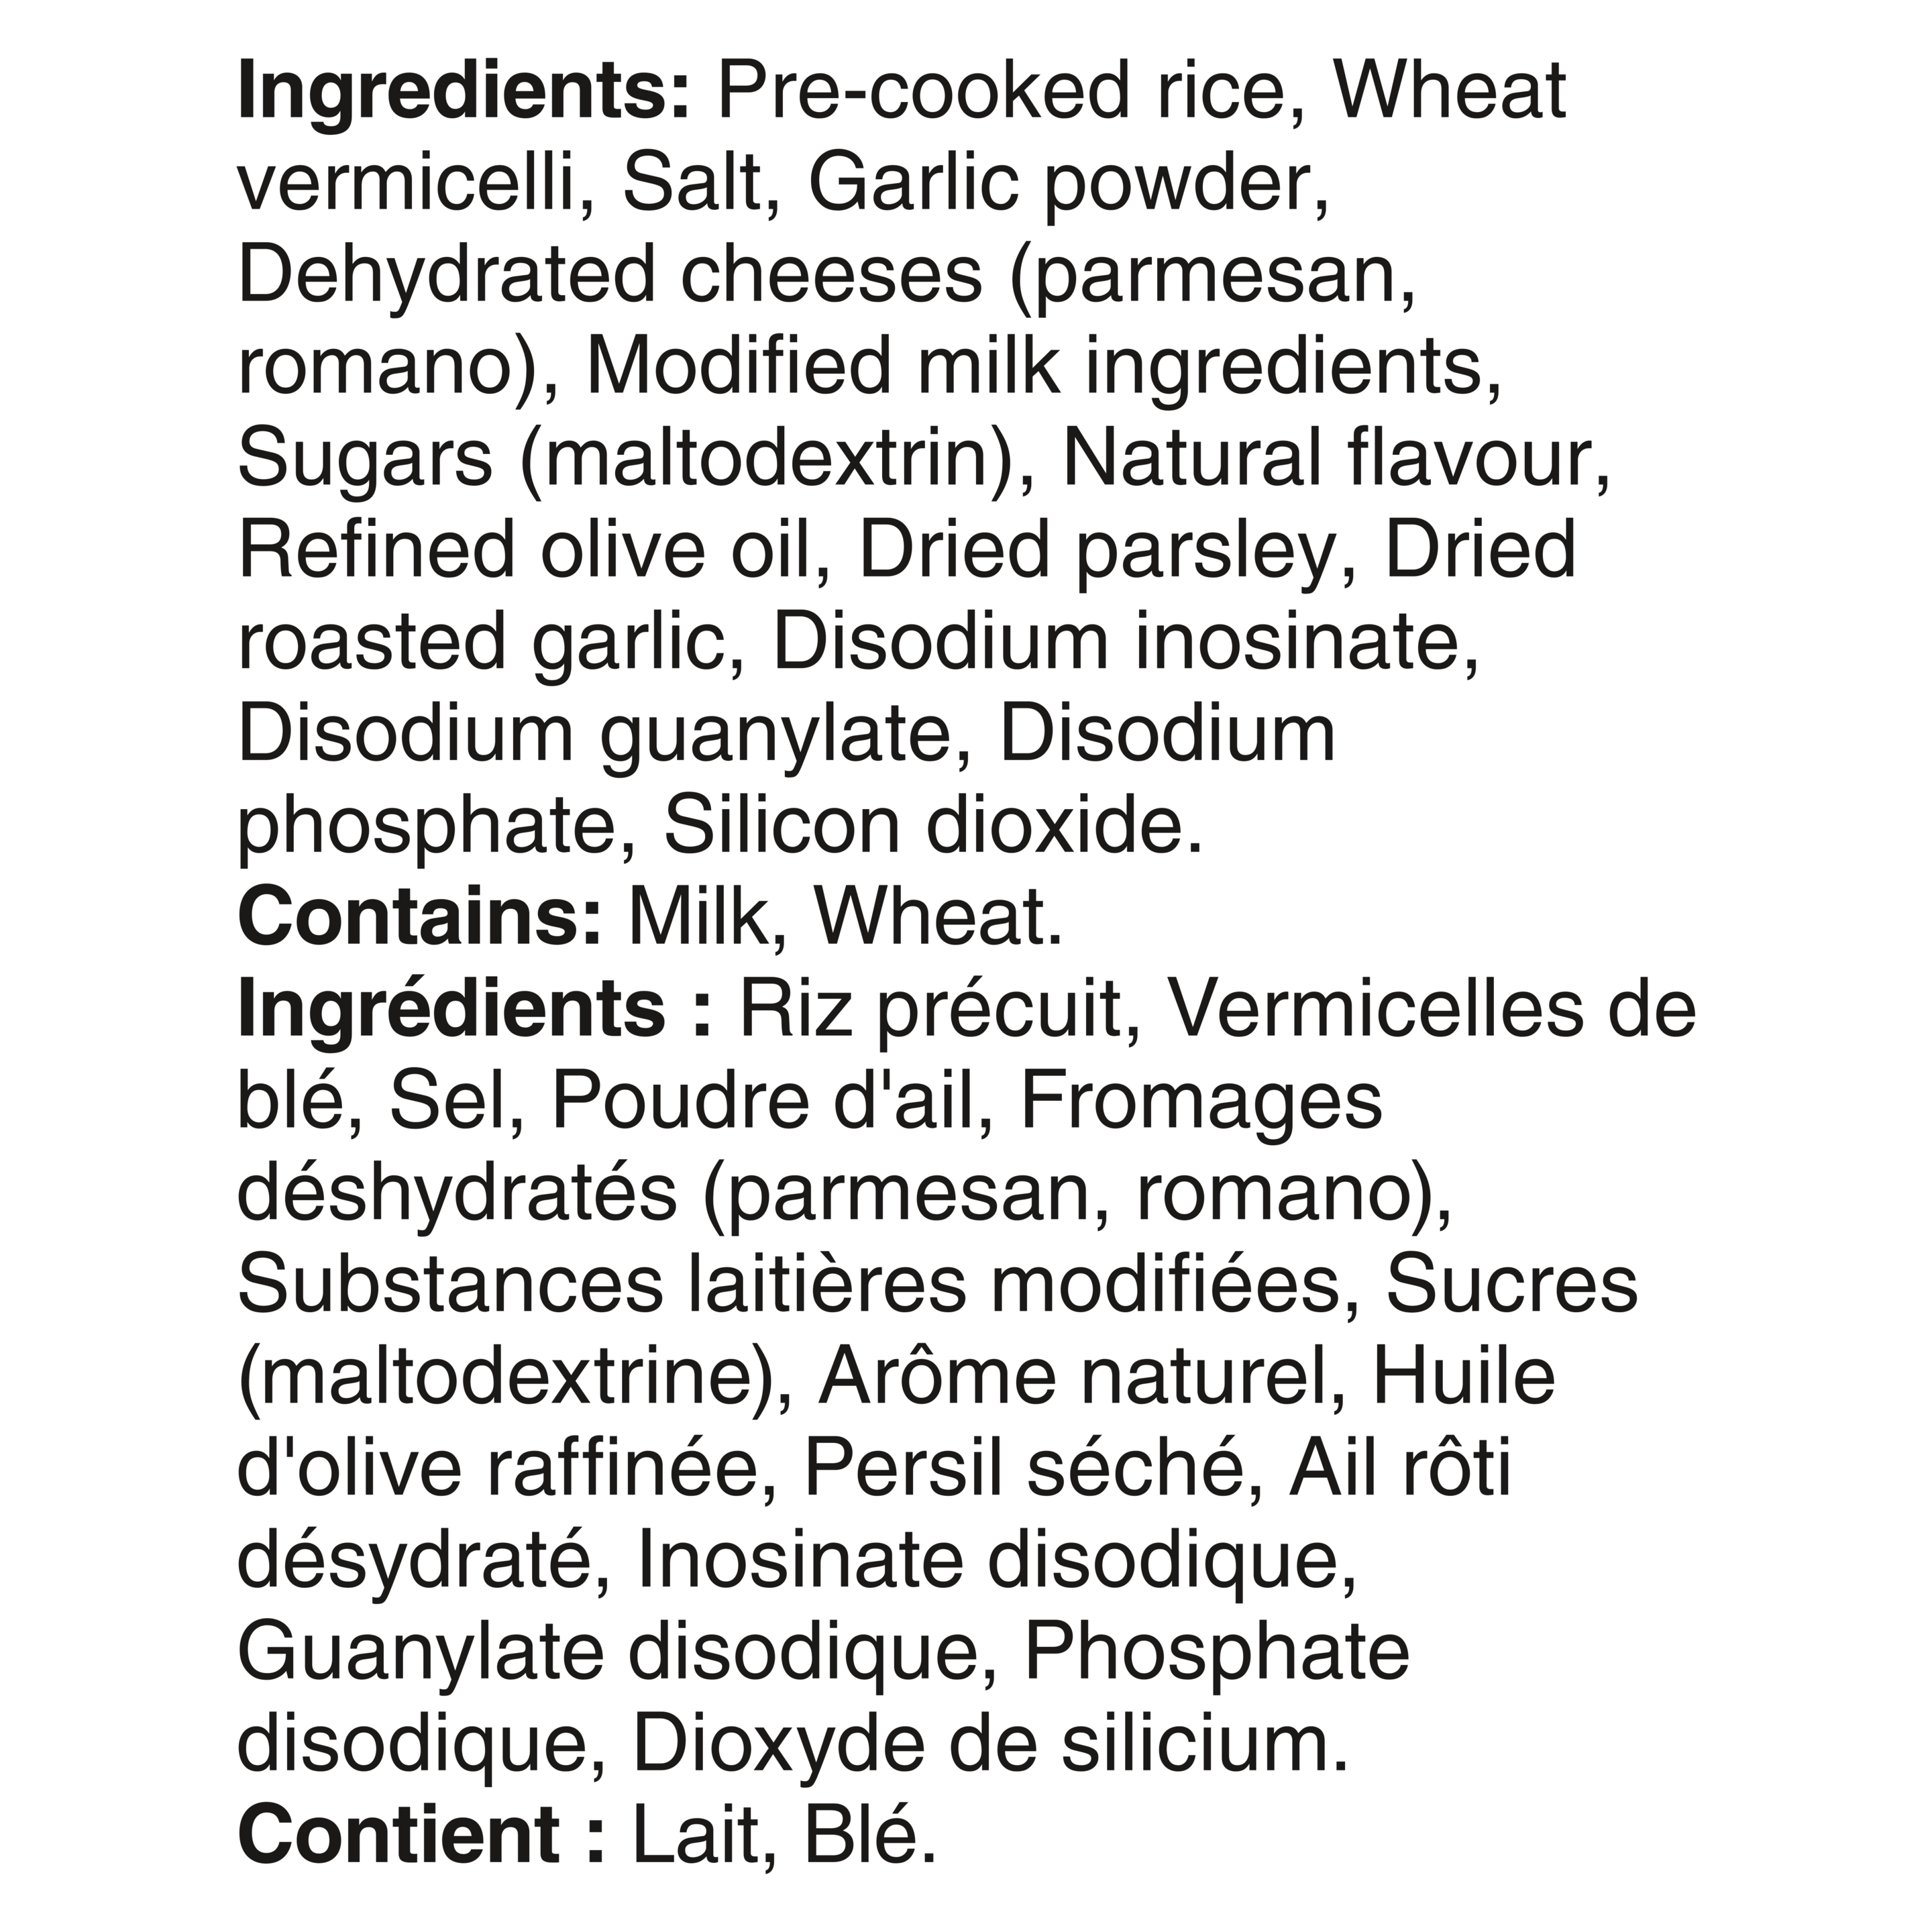 Plat d'accompagnement Riz et vermicelli Parmesan à l'ail Knorr® Sidekicks